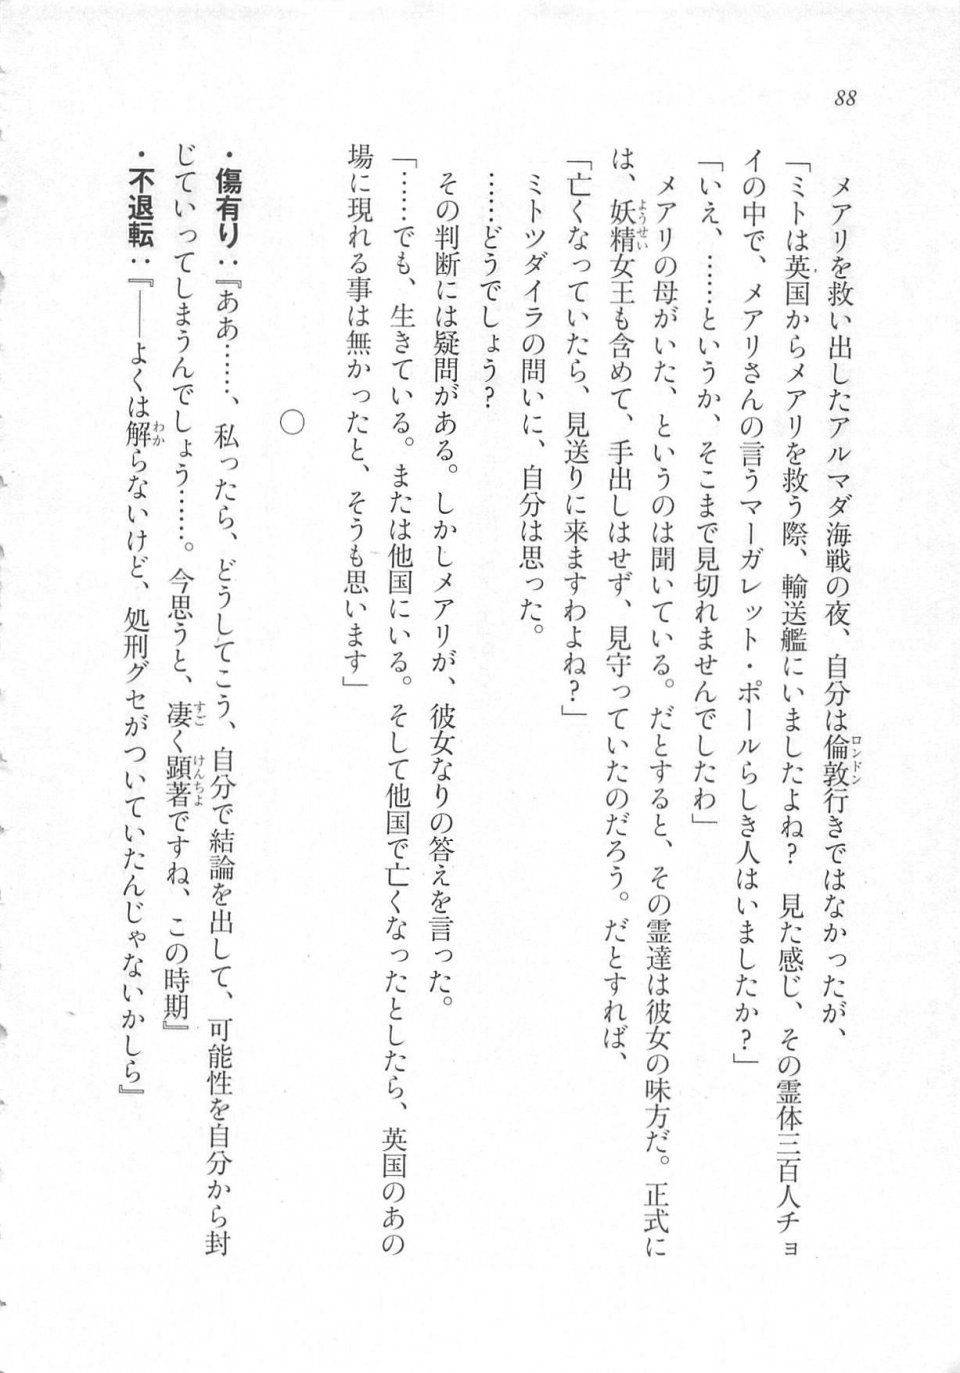 Kyoukai Senjou no Horizon LN Sidestory Vol 3 - Photo #92